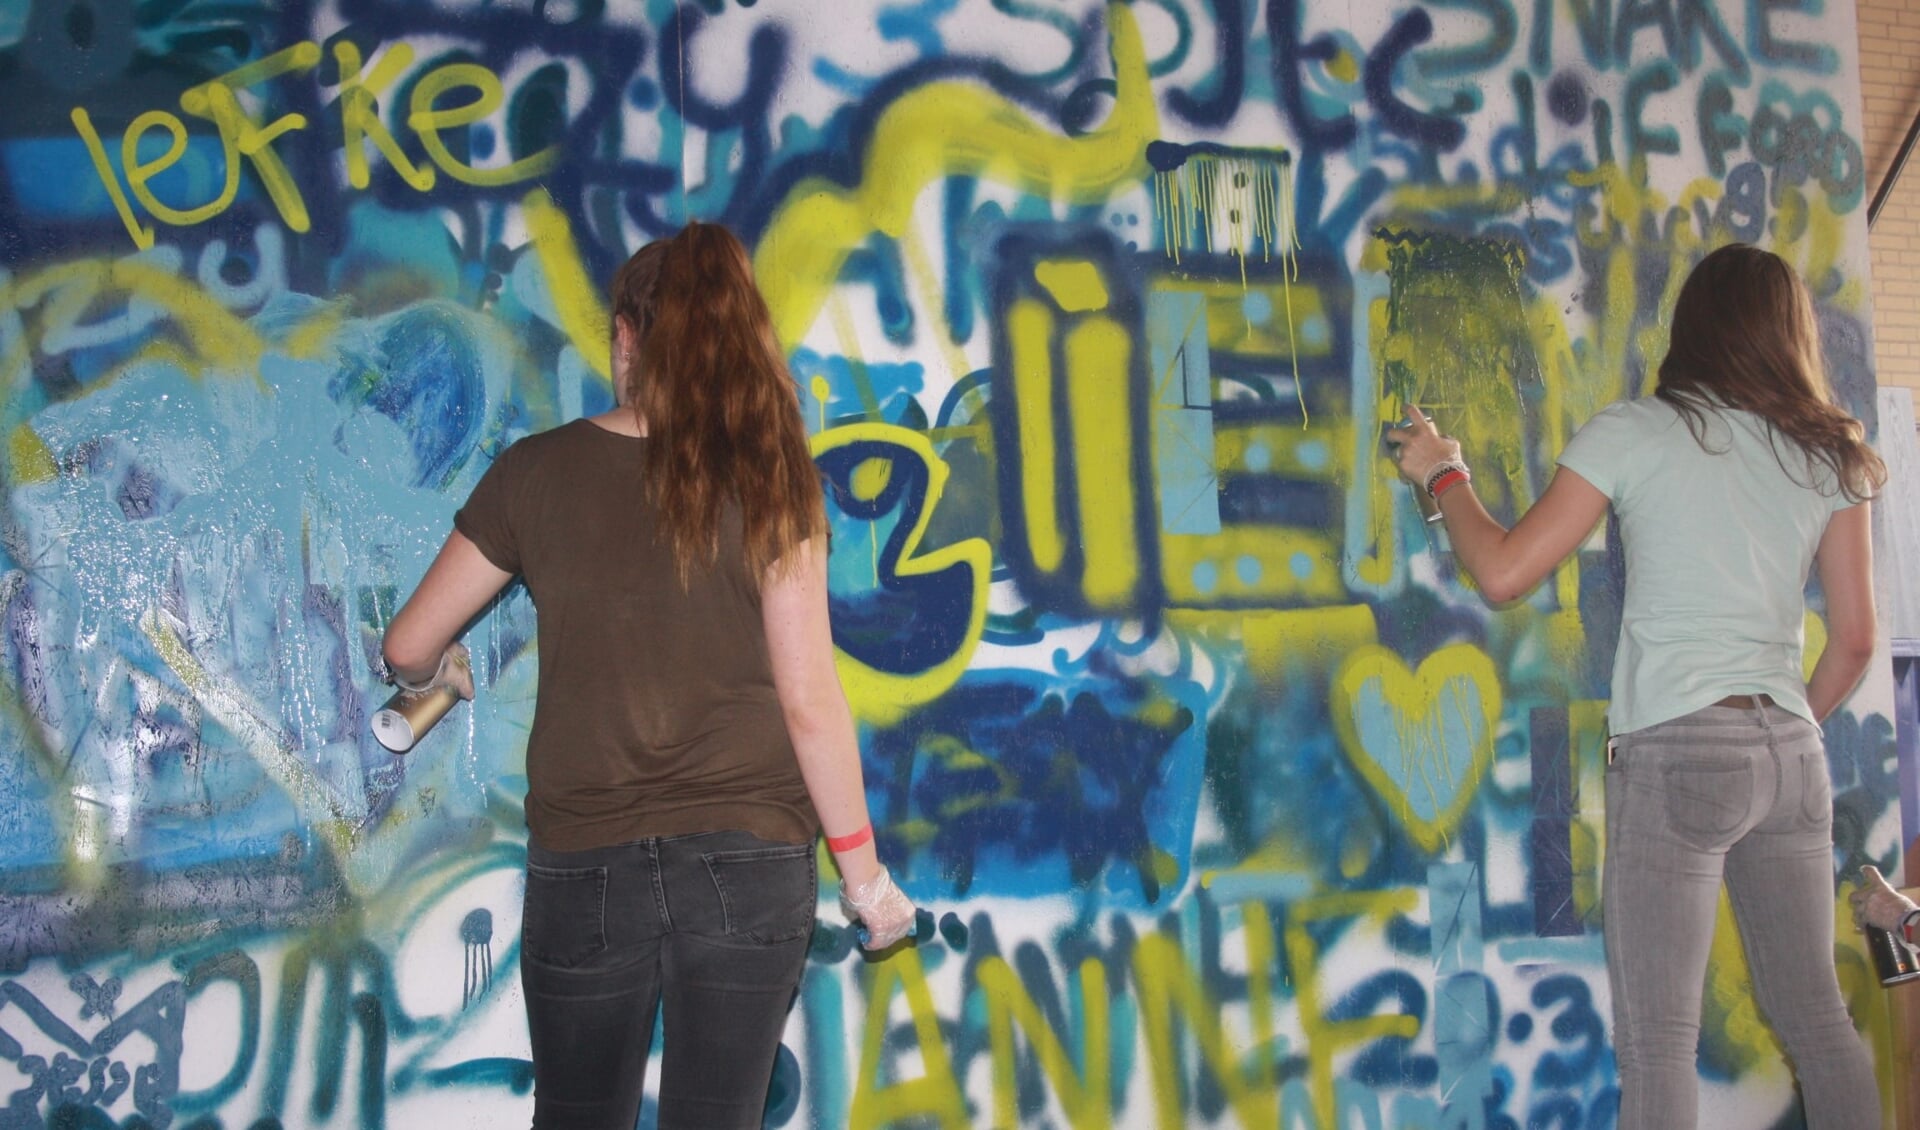 Eén van de workshops is graffiti spuiten